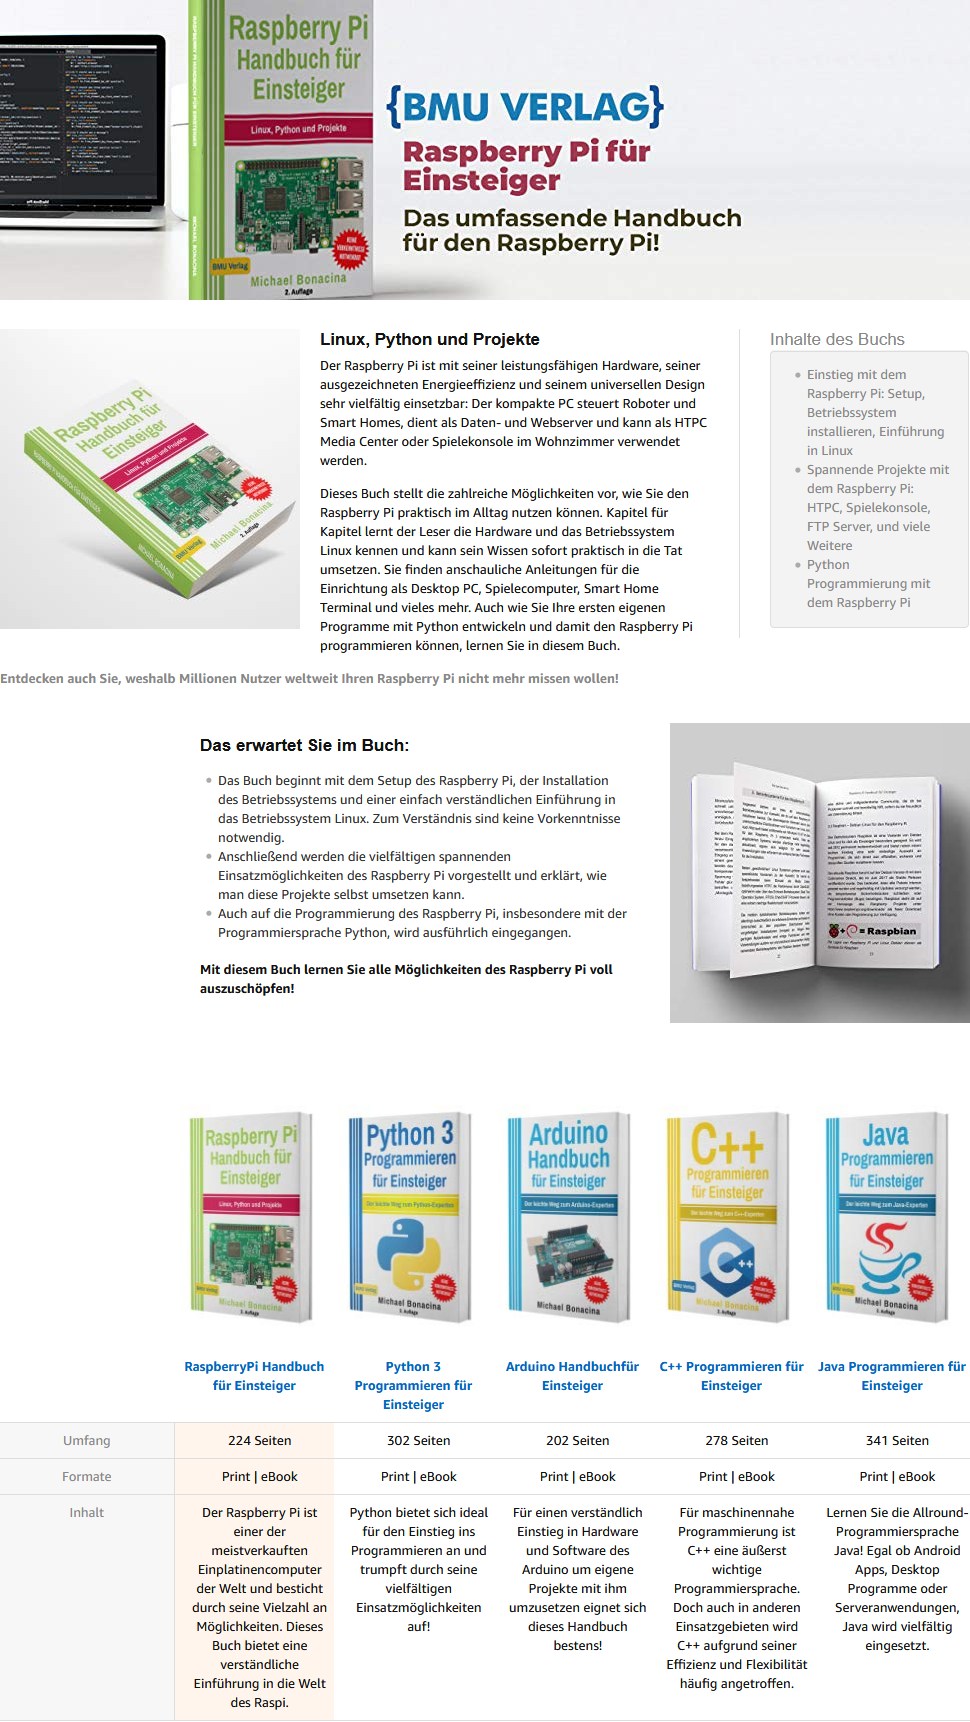 Raspberry Pi Handbuch für Einsteiger Michael Bonacina BMU Verlag Bestseller